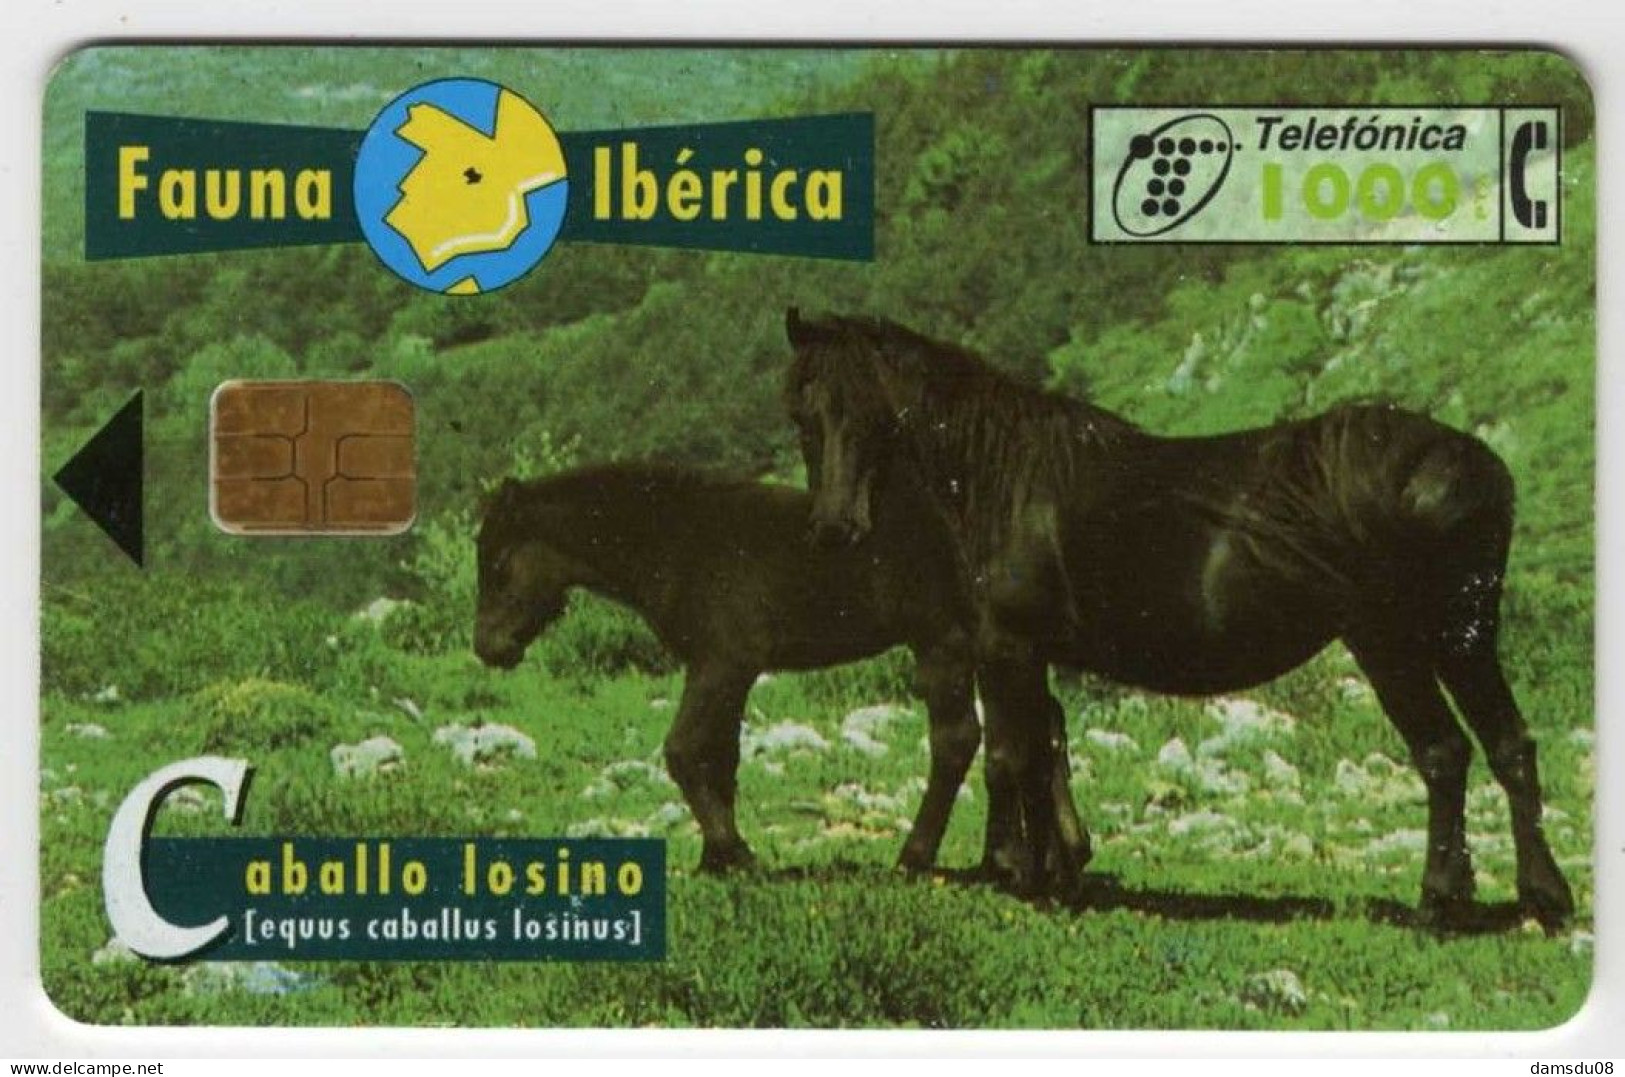 Espagne 1000 PTA Fauna Iberica Caballo Losino 01/97 1.000.000 Exemplaires Vide Cheval - Basisuitgaven